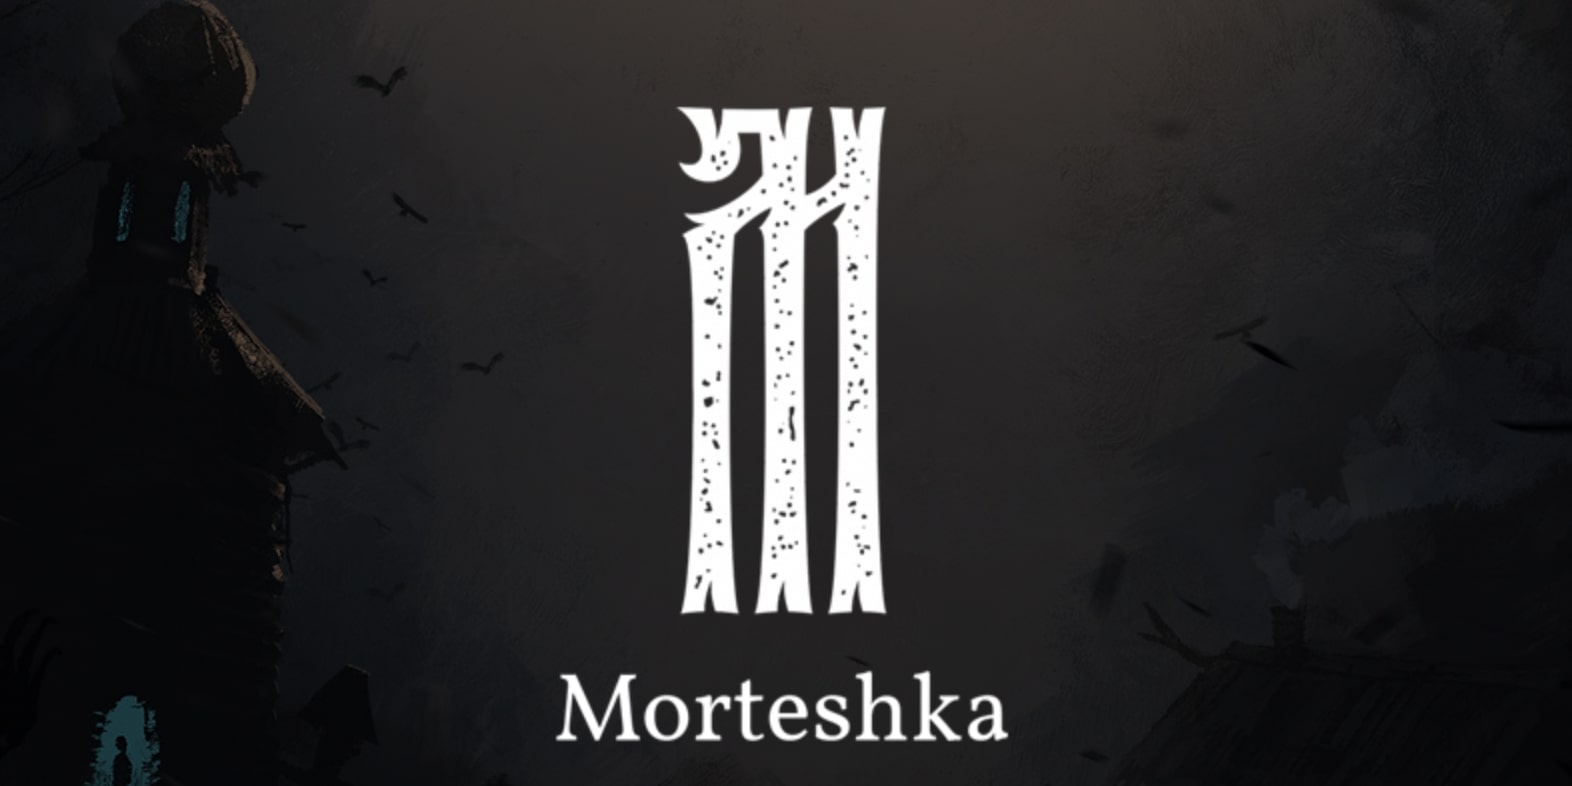 Morteshka